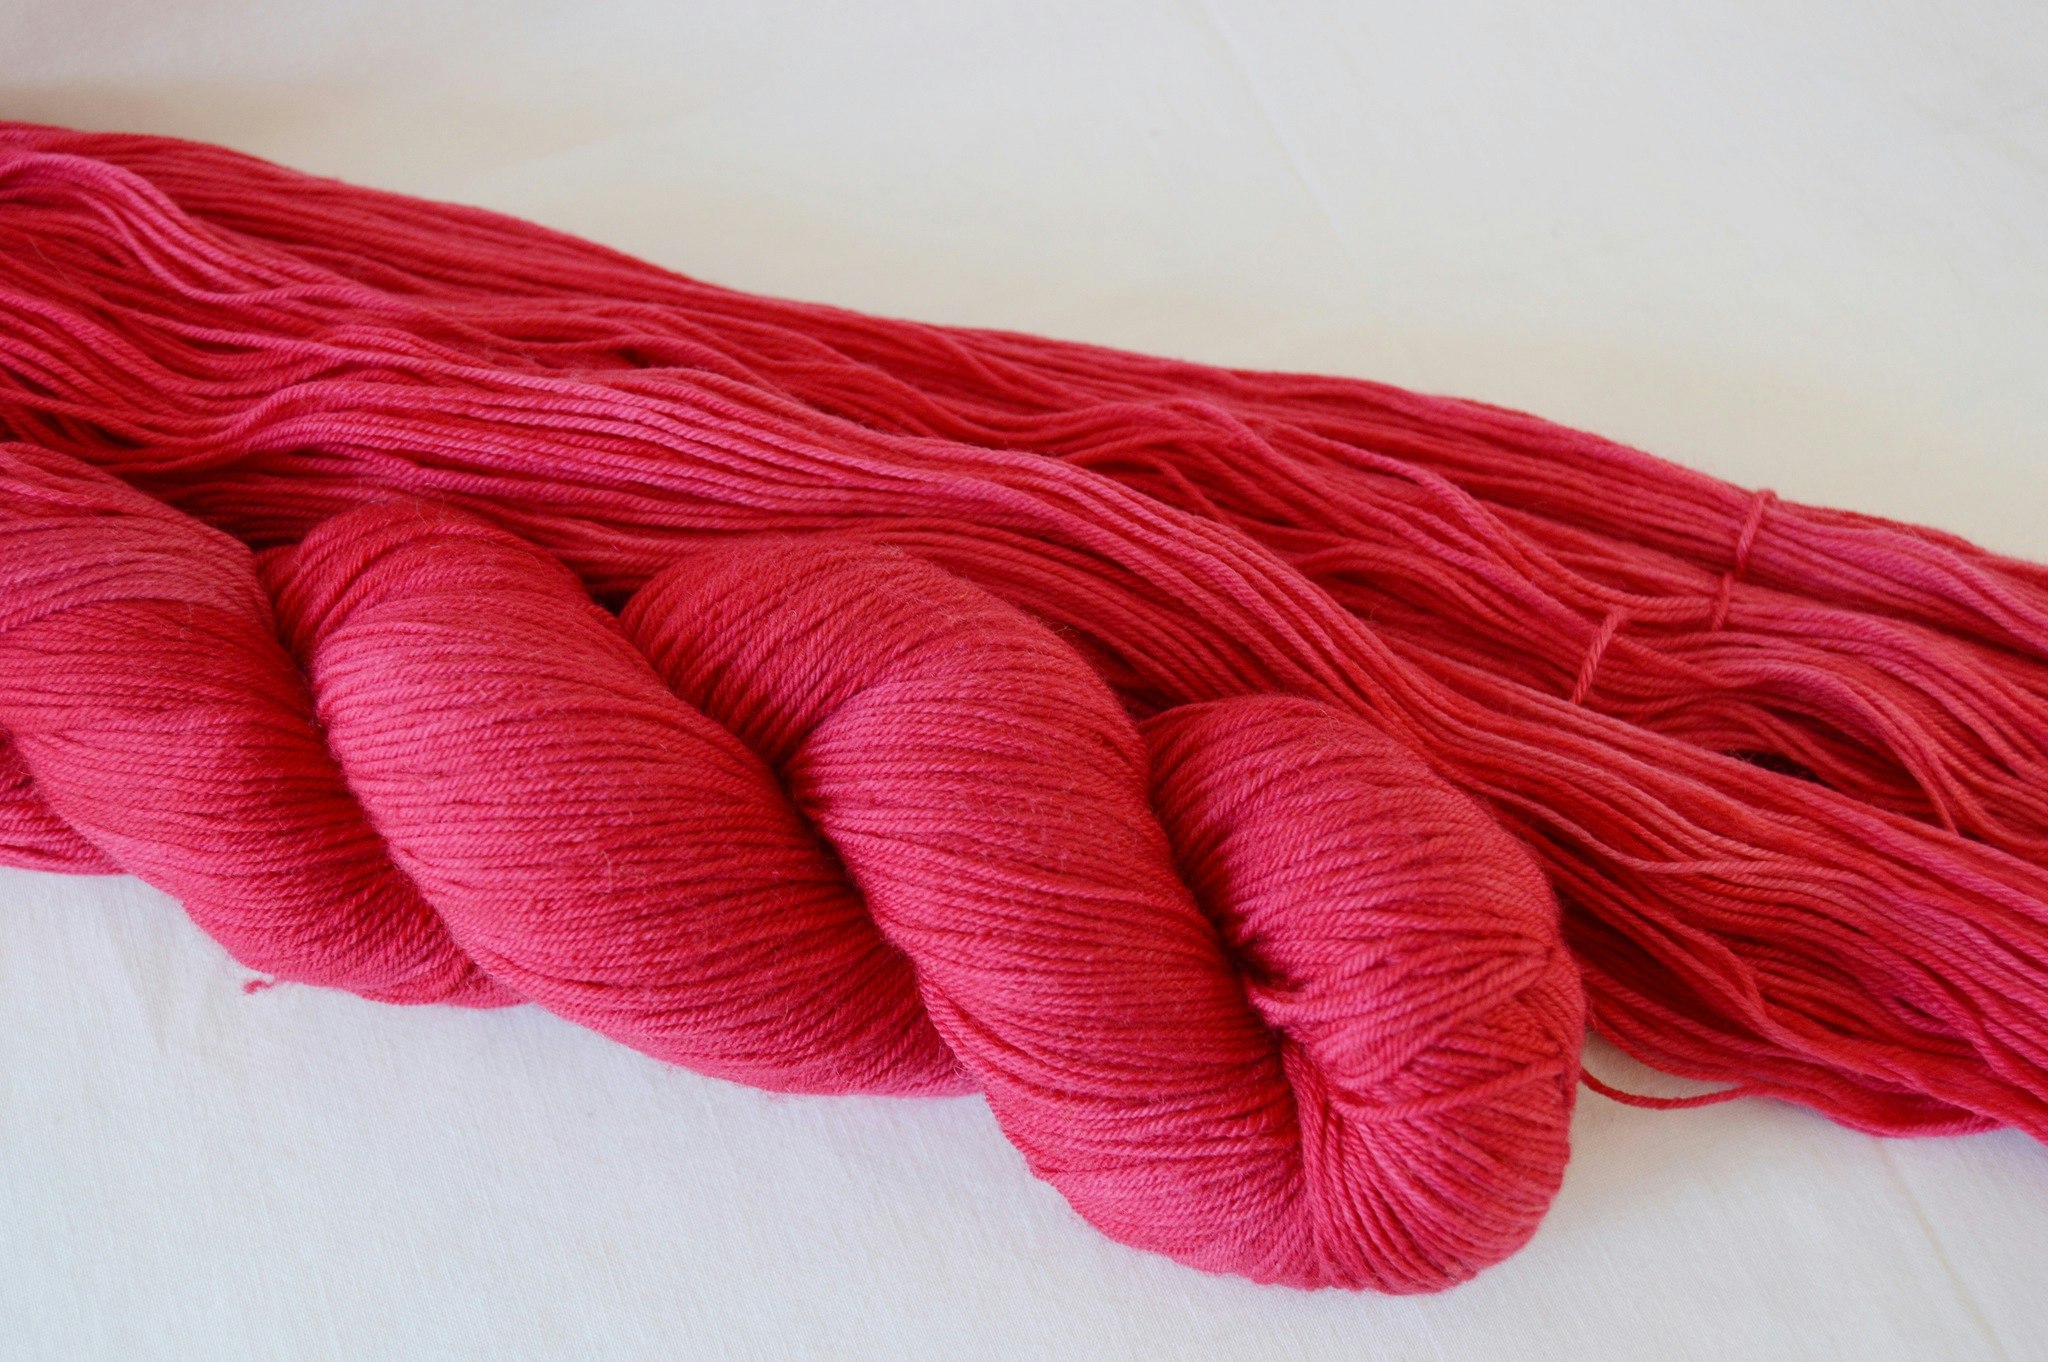 Socks är ett underbart mjukt handfärgat garn. Detta sockgarn är mörkt rosarött och passar till bla sockor och tröjor.